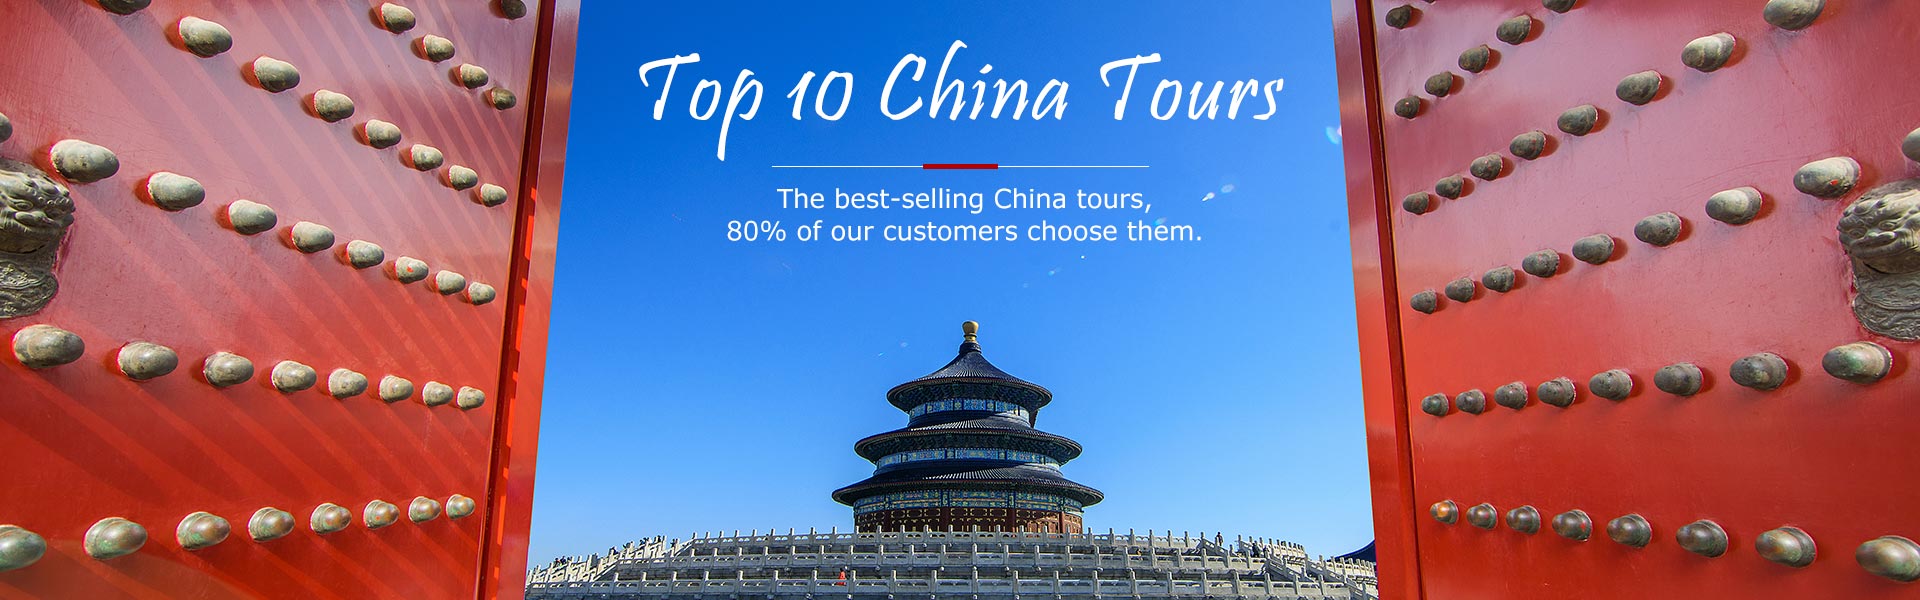 top 10 china tours